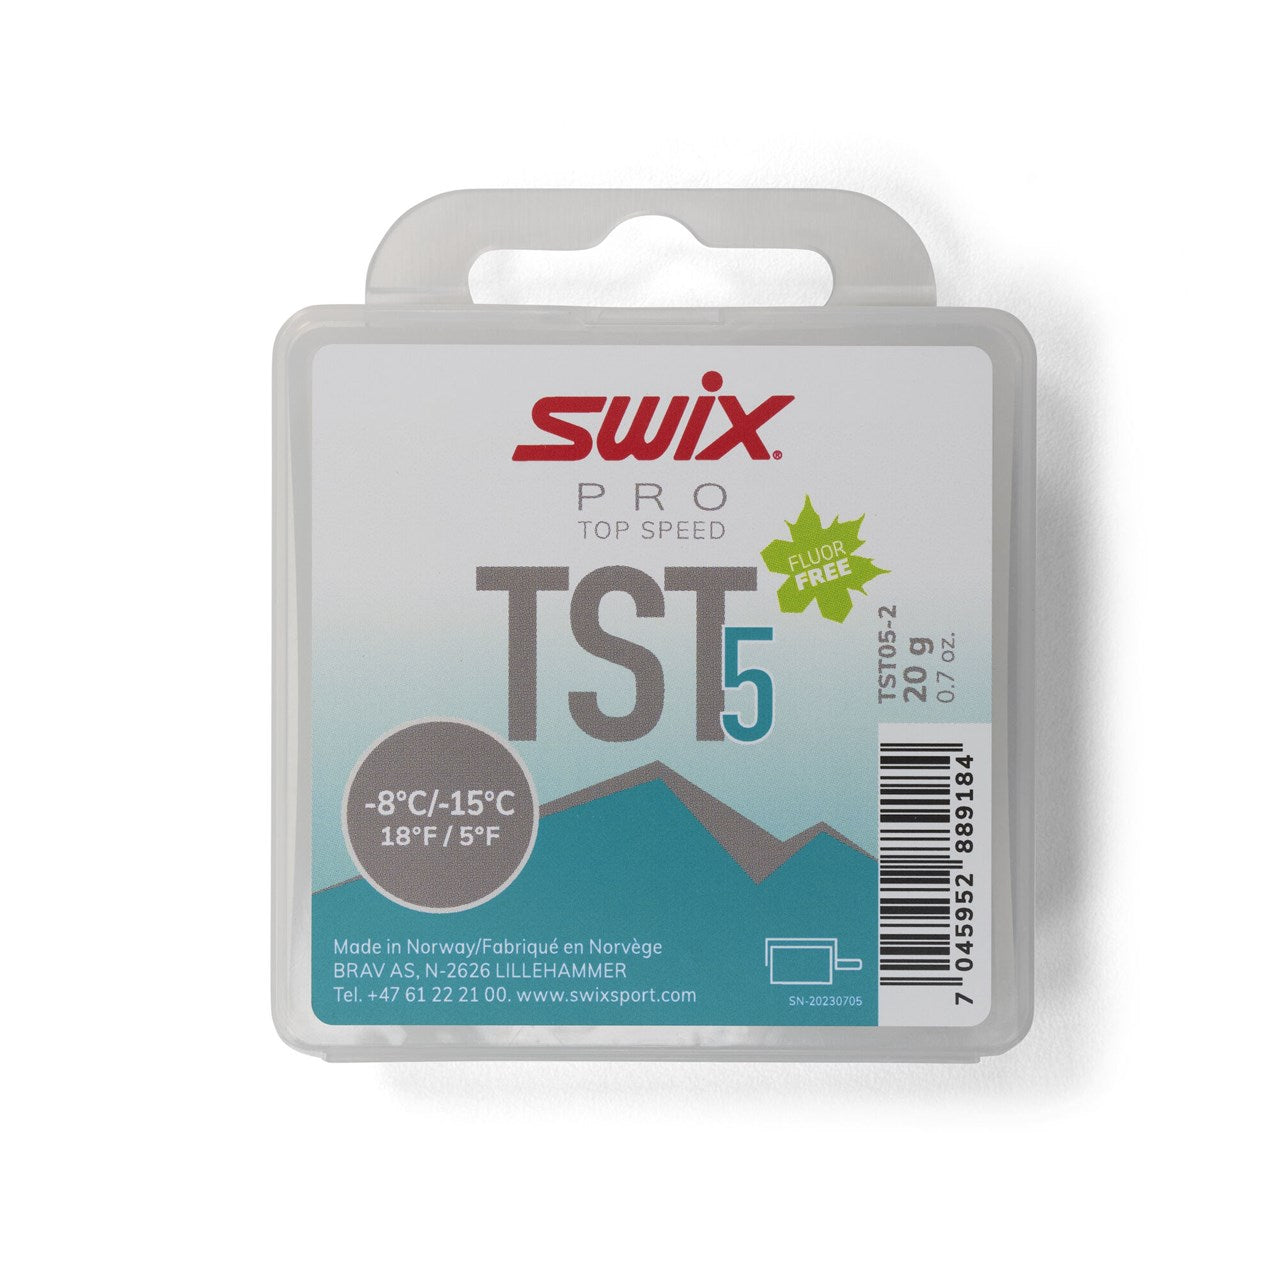 Swix TS5 Turbo Wax Turquoise 20g TUNING EQUIPMENT Swix   